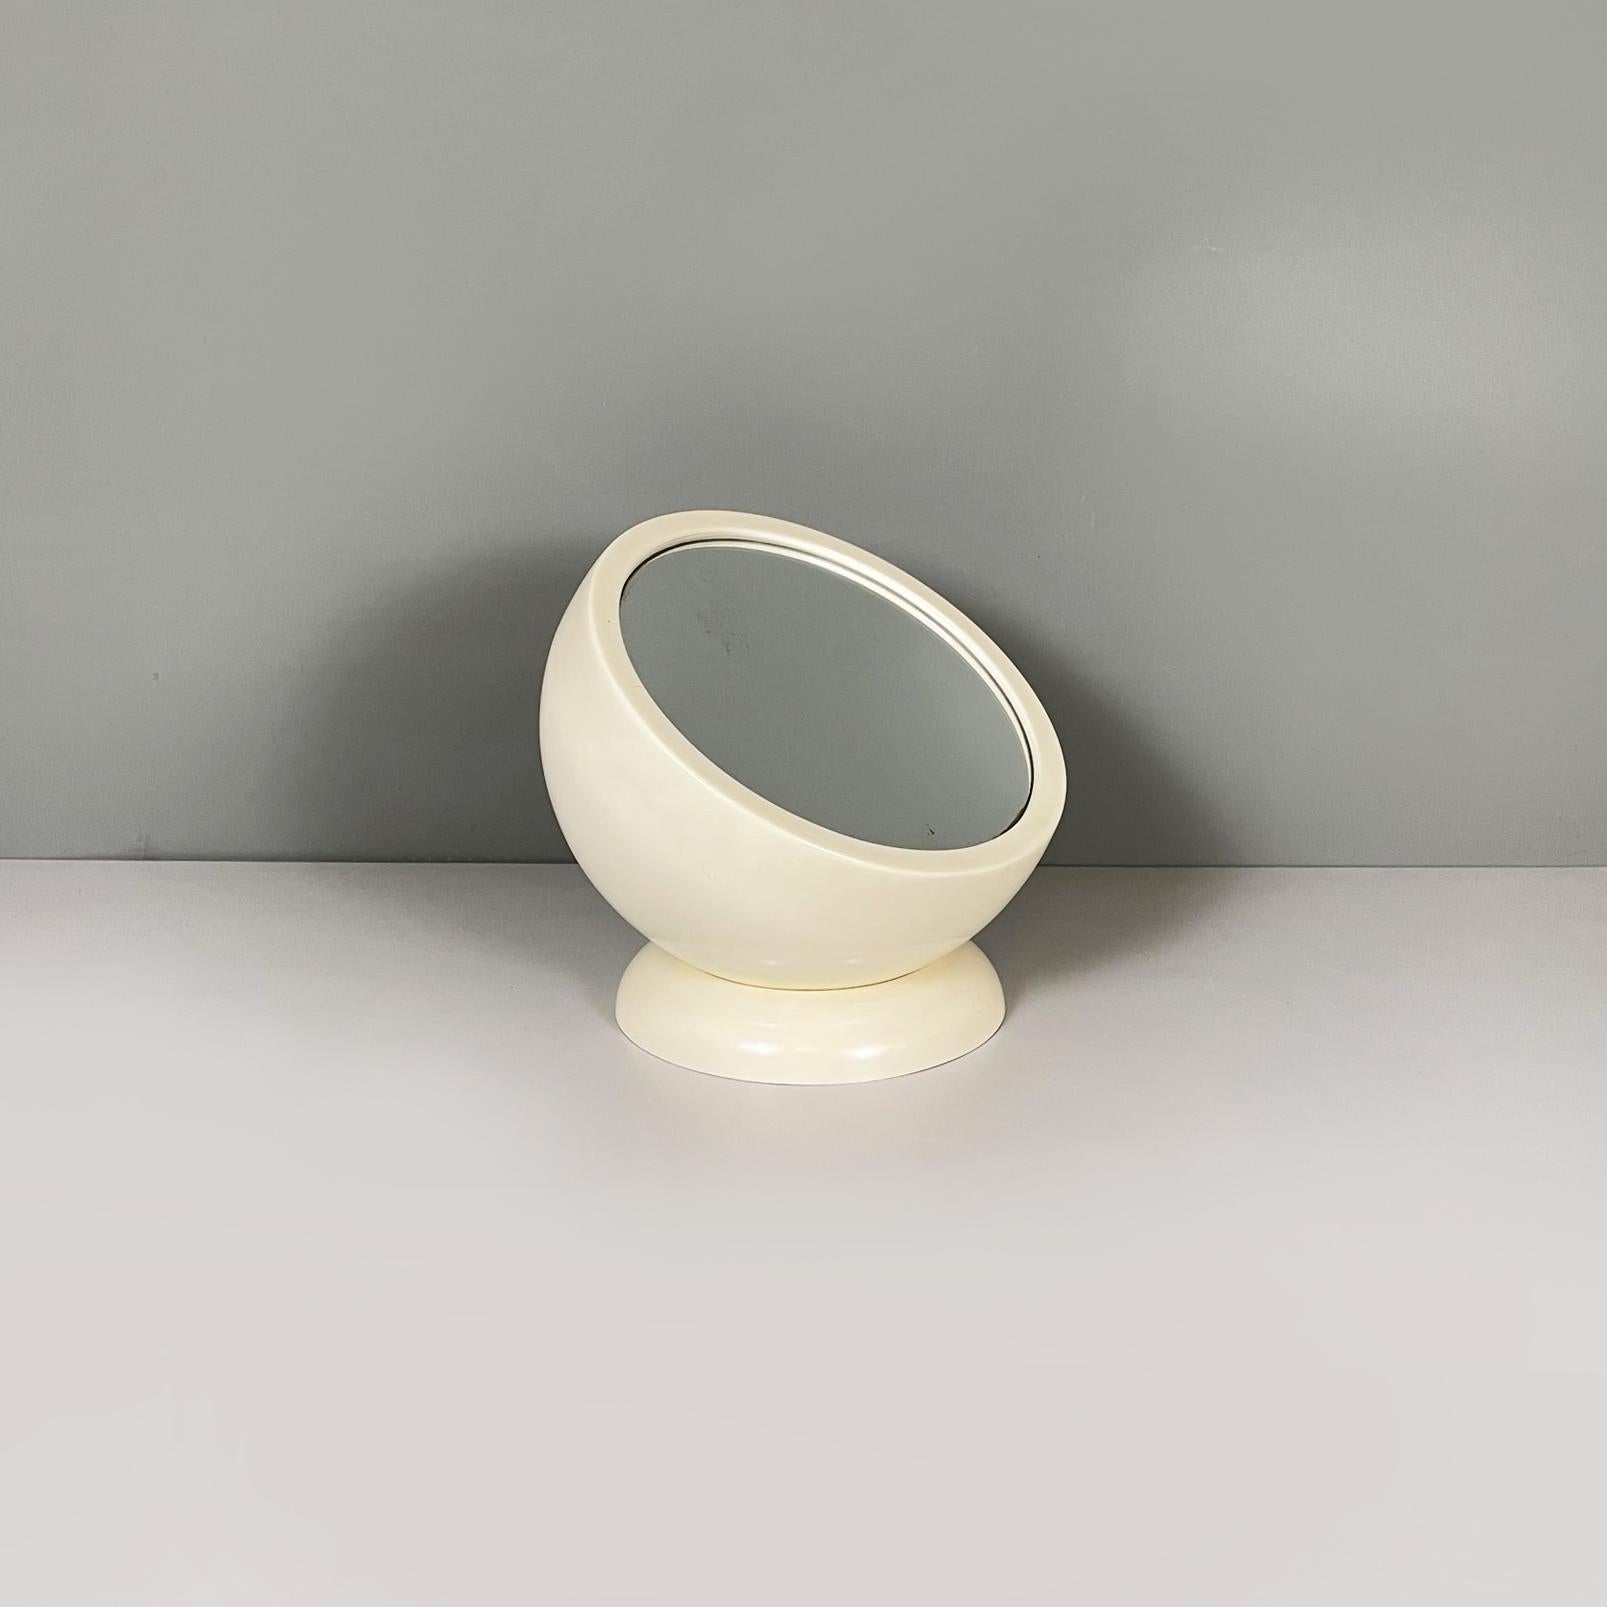 Miroir de table italien ajustable Space Age en plastique ABS blanc crème par Filippo Panseca, 1970
Miroir de table avec miroir rond et base ronde, en plastique ABS blanc crème. Le miroir repose sur la base, ce qui permet de le positionner comme on